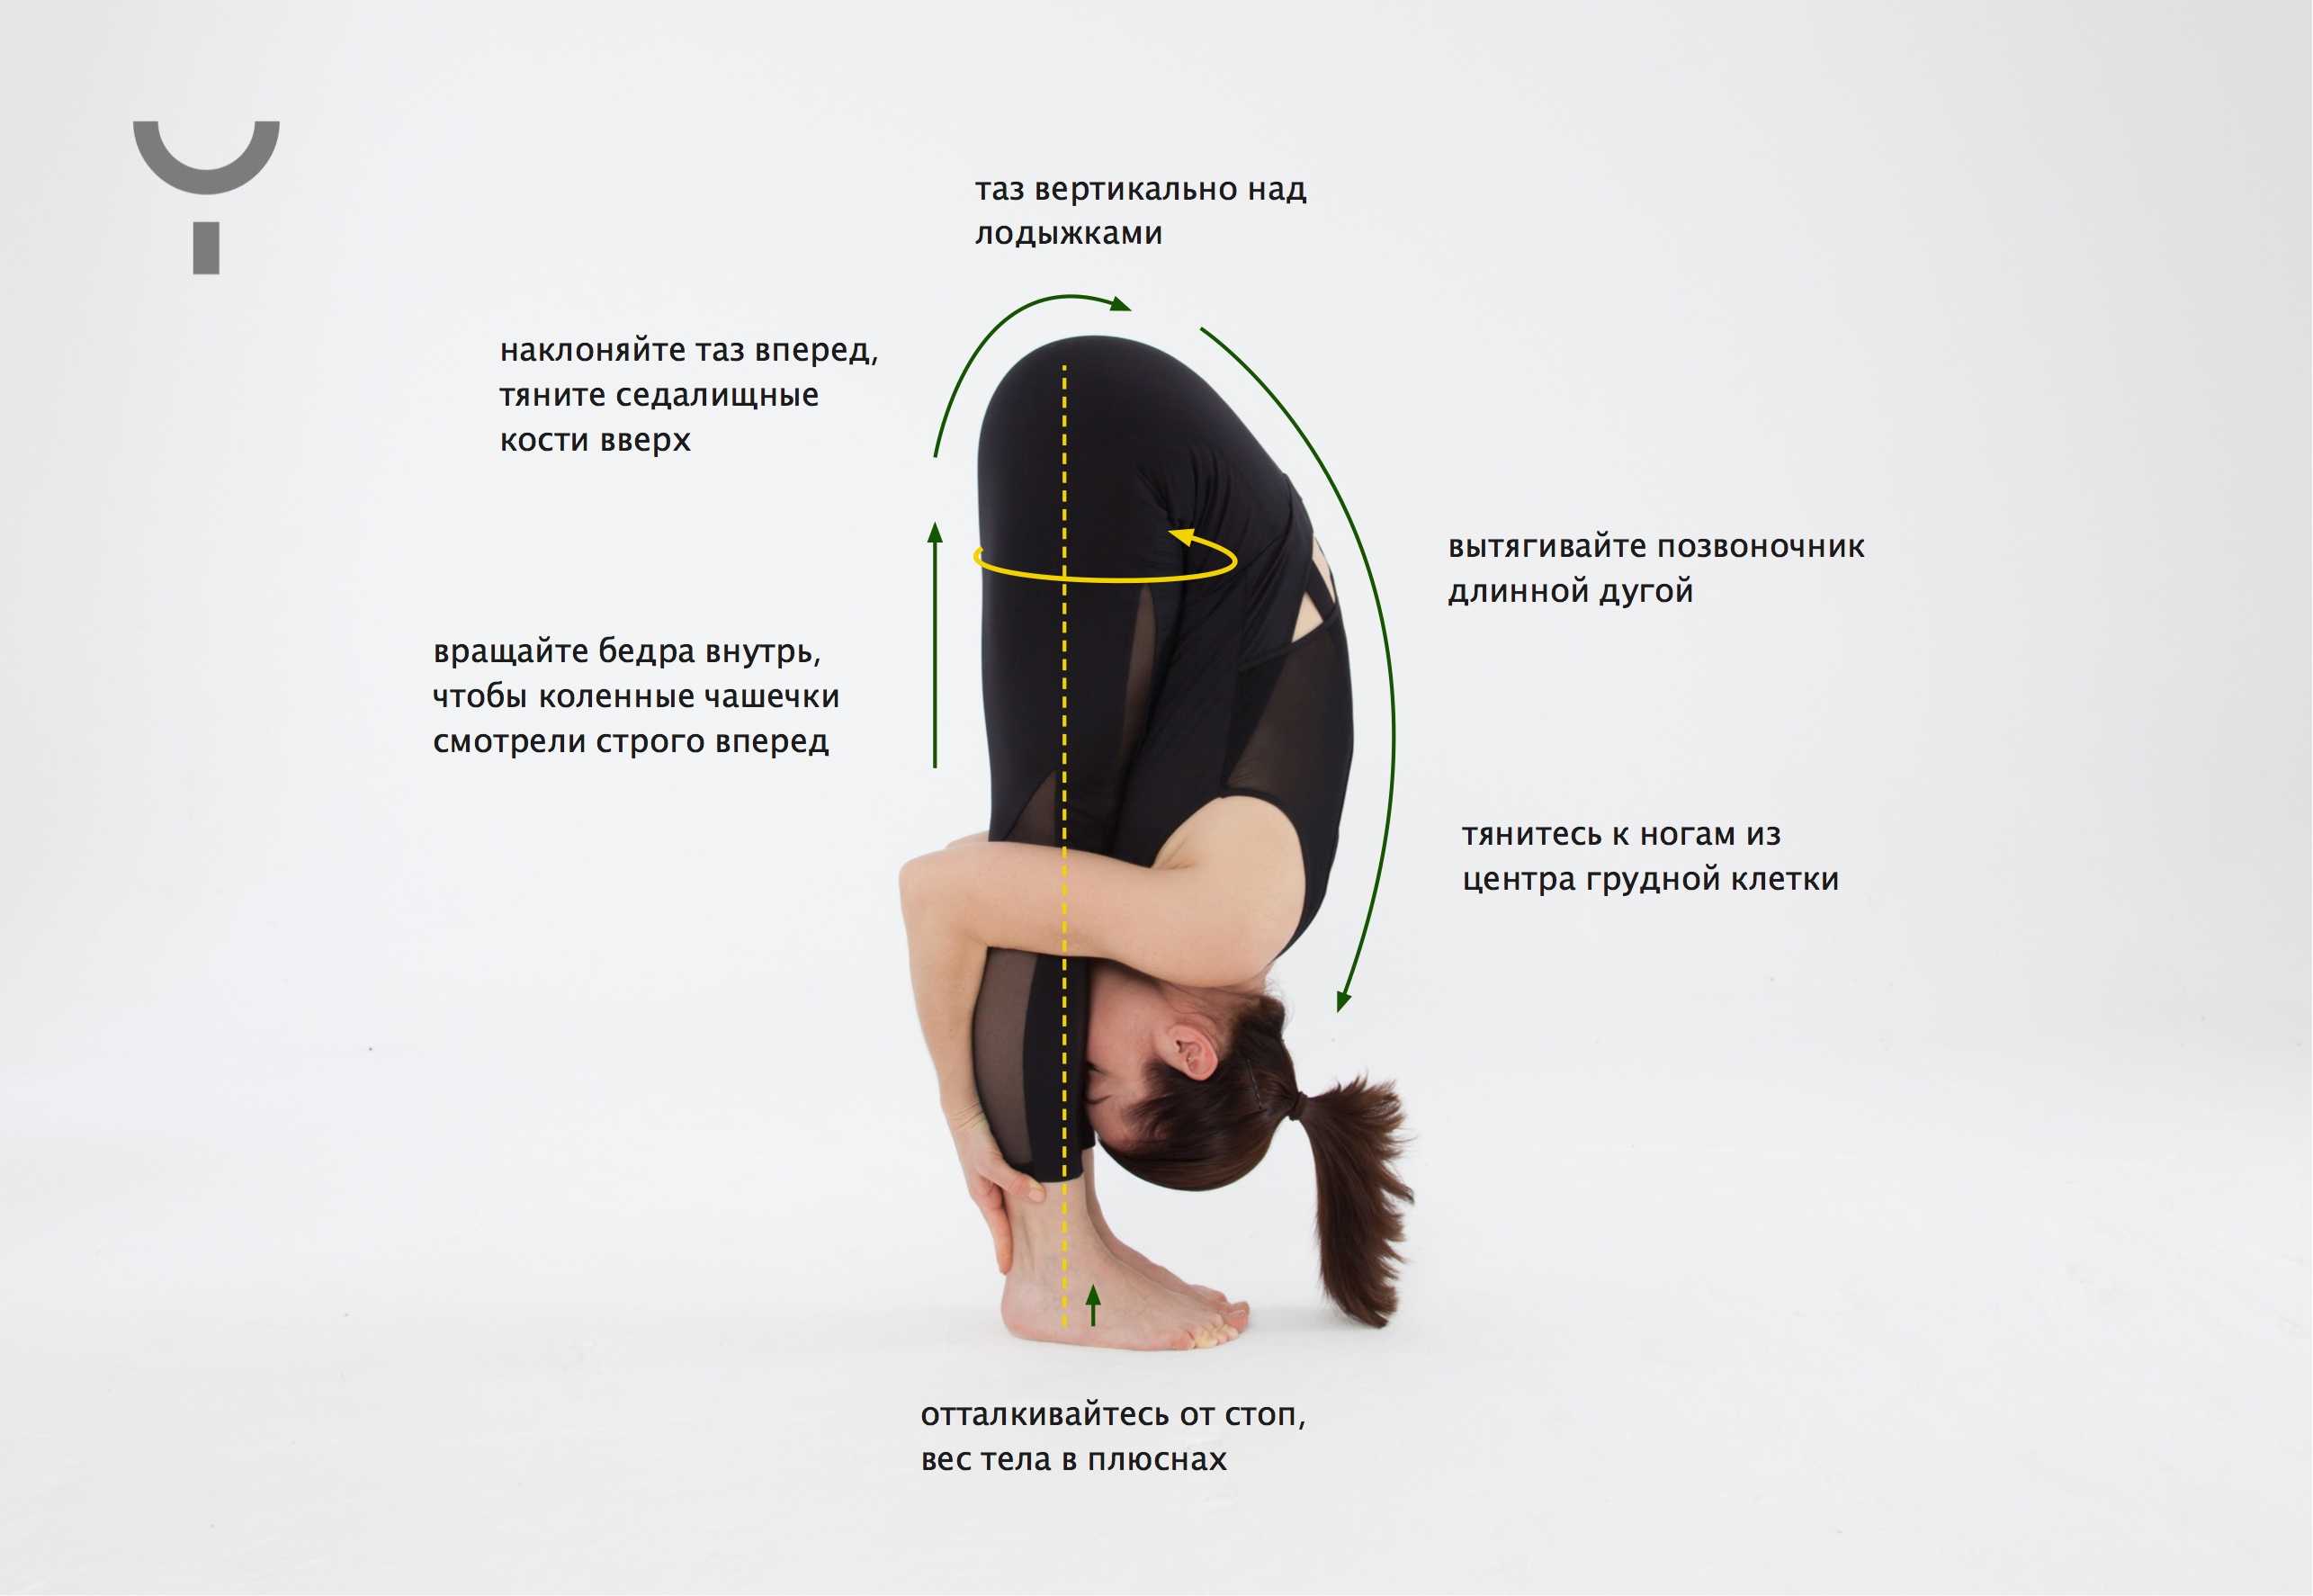 Уттанасана: поза интенсивного вытяжения в йоге, ее техника выполнения, а также польза и противопоказания